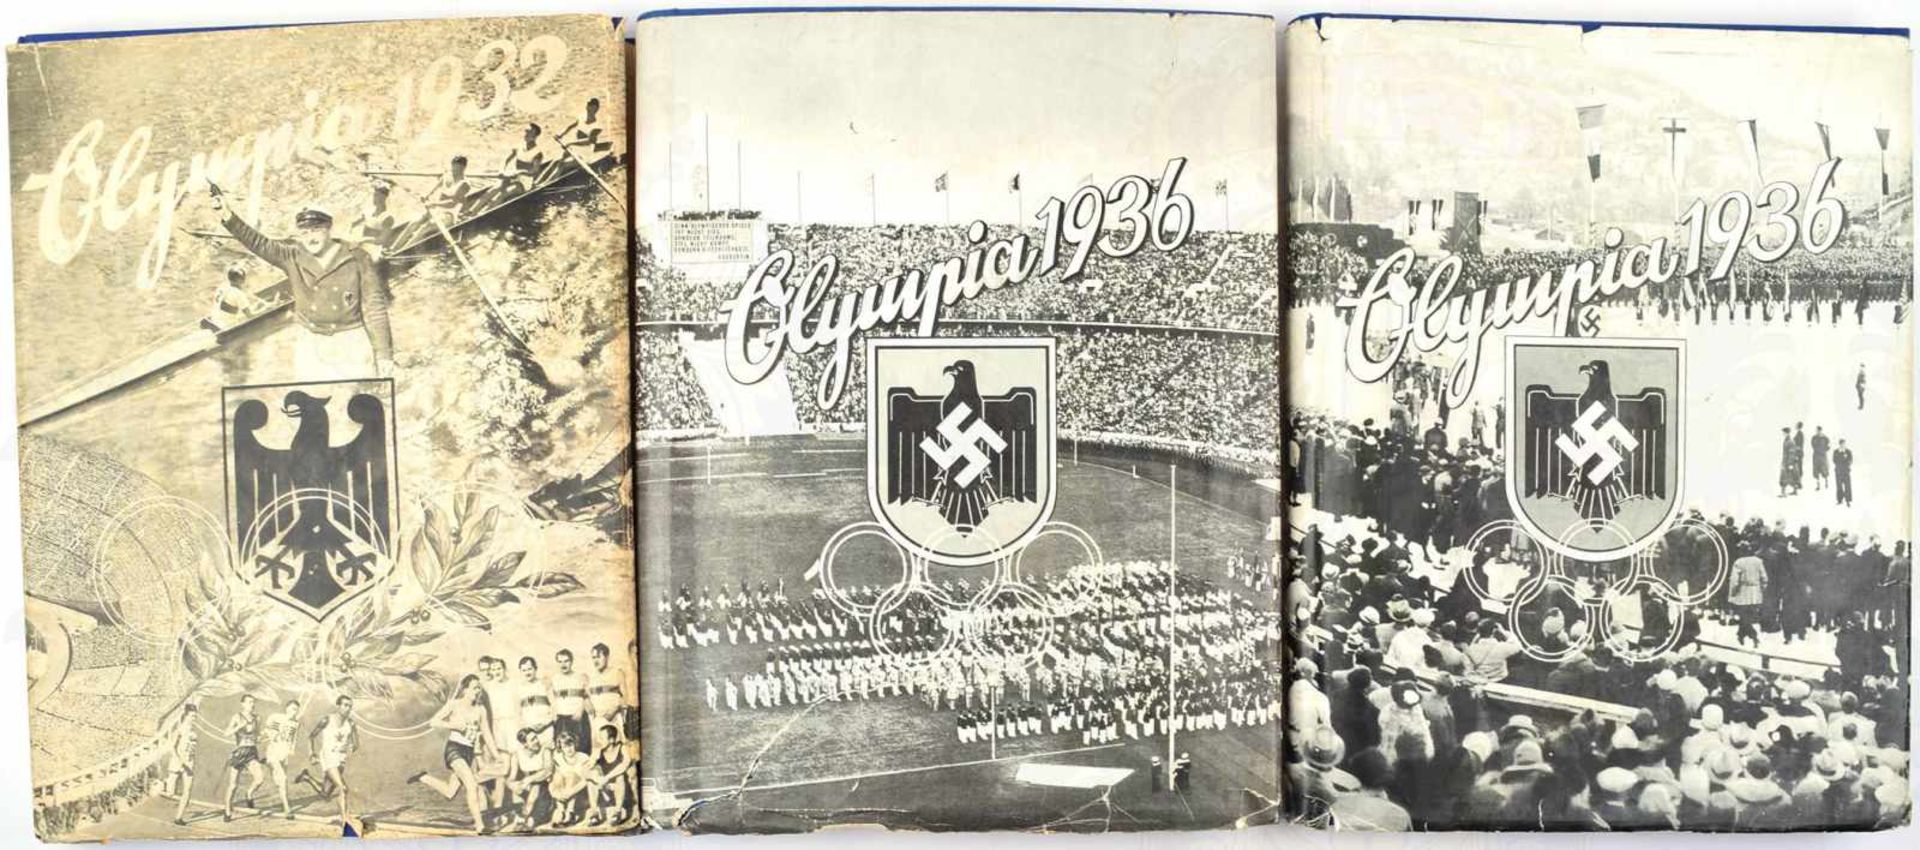 3 ALBEN OLYMPIA 1932 UND 1936, Los Angeles; Berlin u. Garmisch-Partenkirchen, Bde. 1 u. 2, farbige